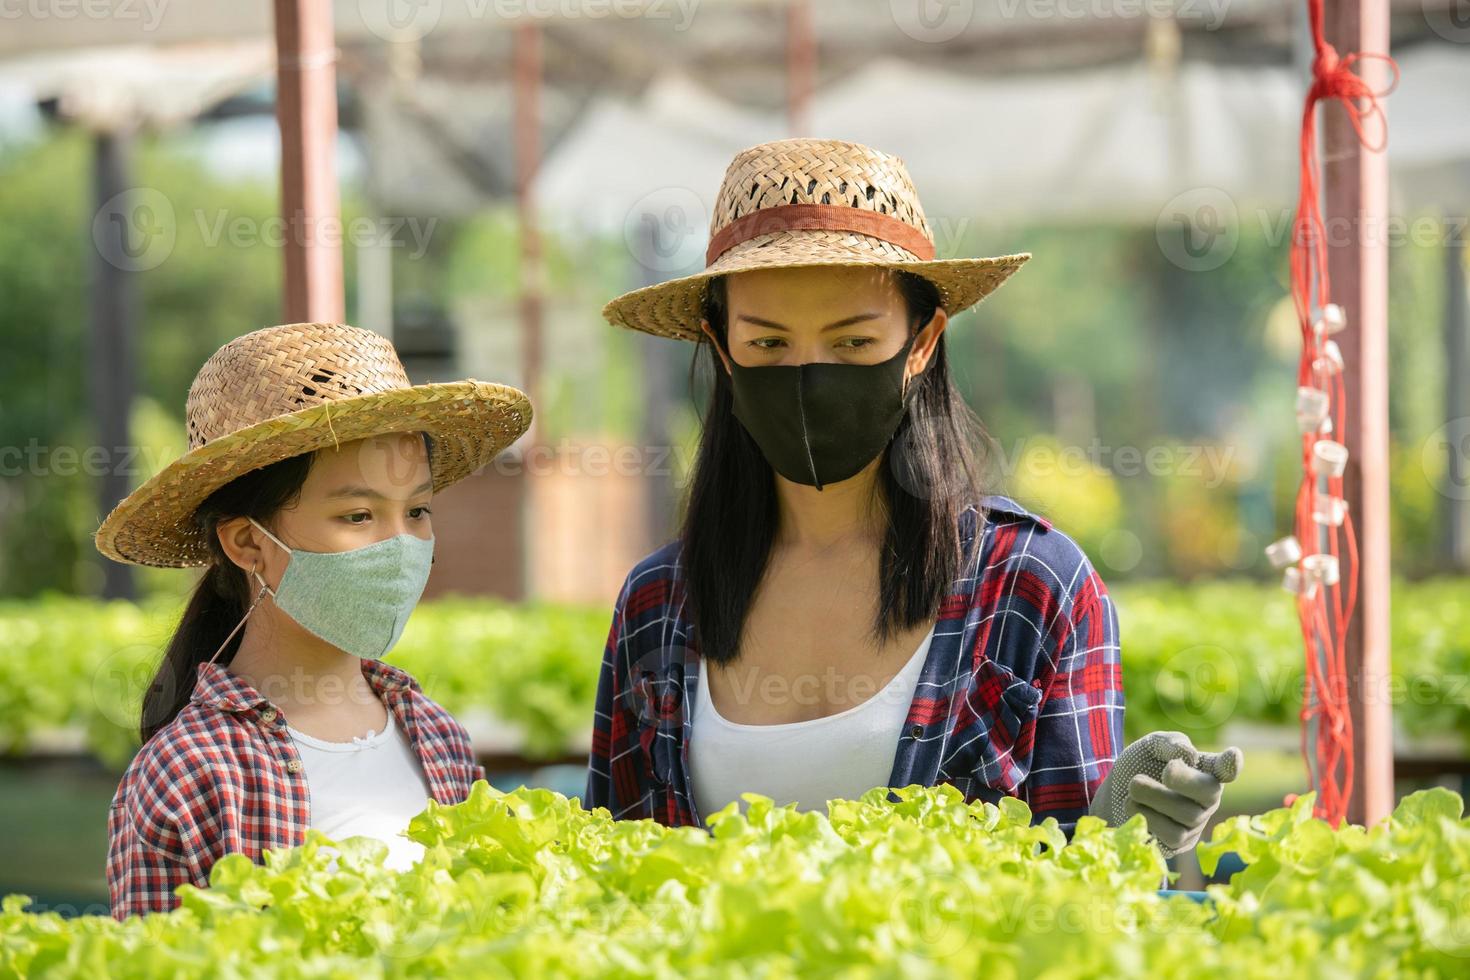 Aziatische moeder en dochter dragen een masker en helpen samen om de verse hydrocultuurgroente op de boerderij te verzamelen foto